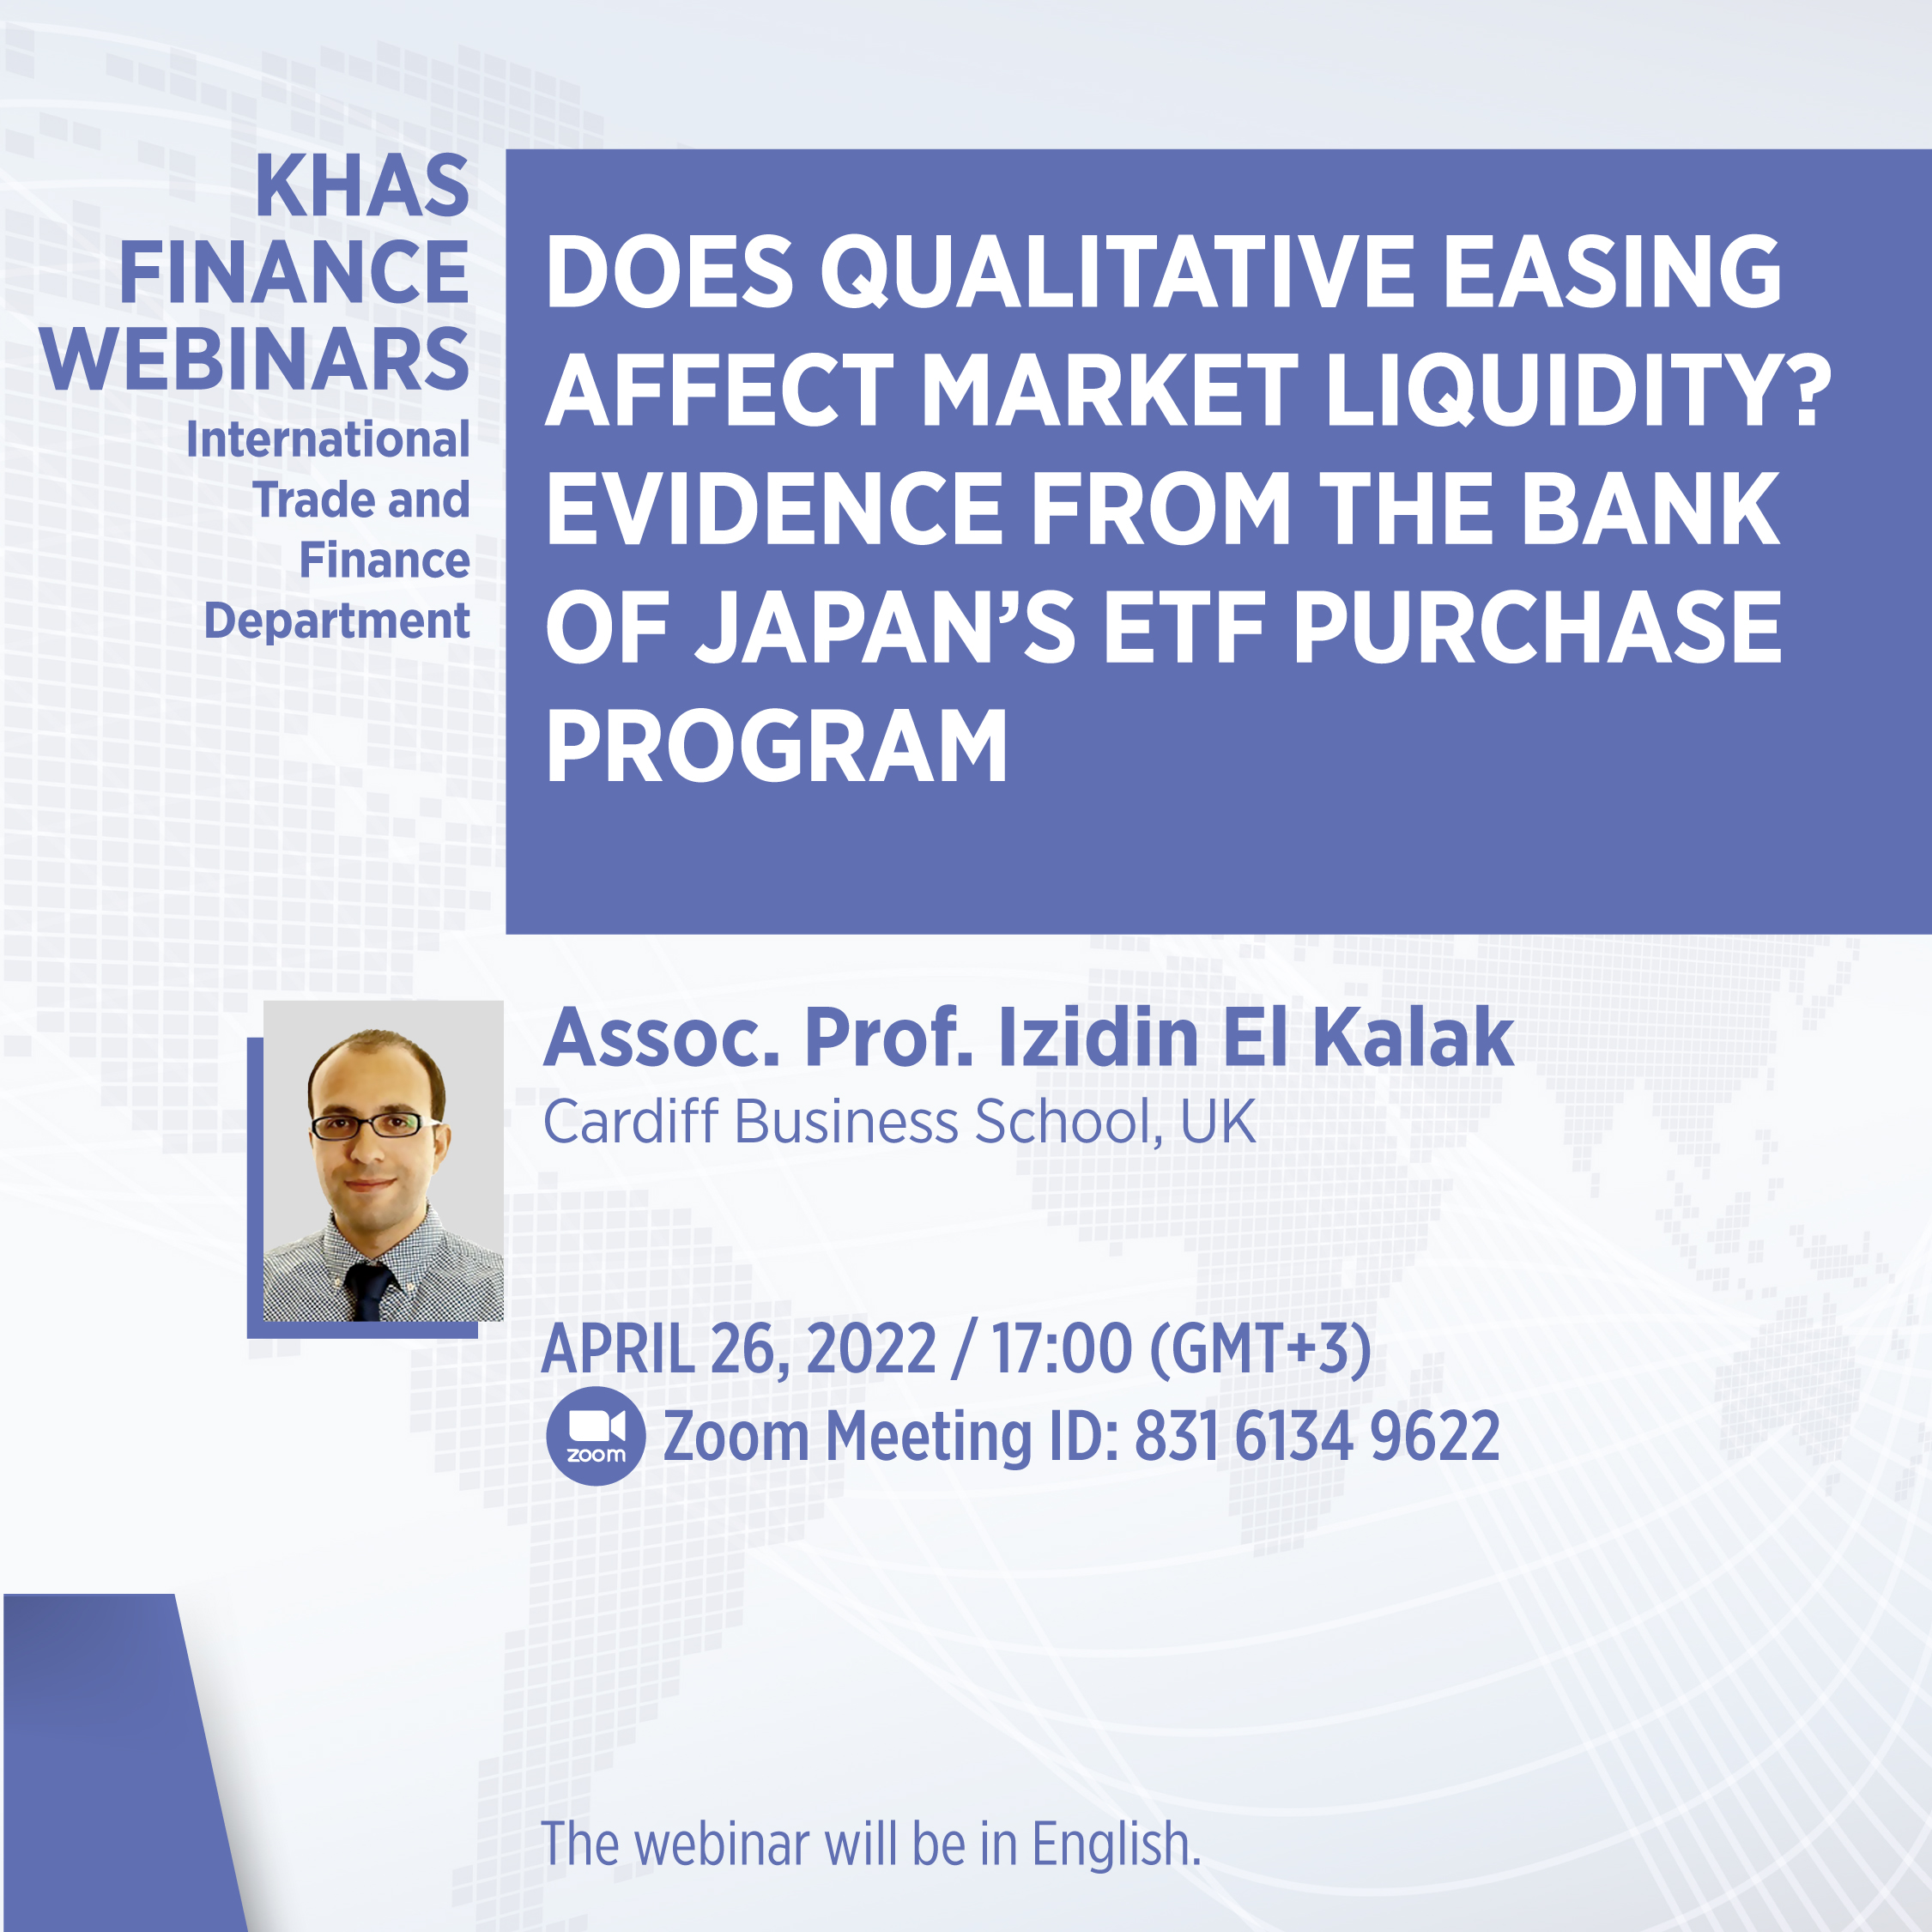 KHAS Finance Webinars - Assoc. Prof. Izidin El Kalak